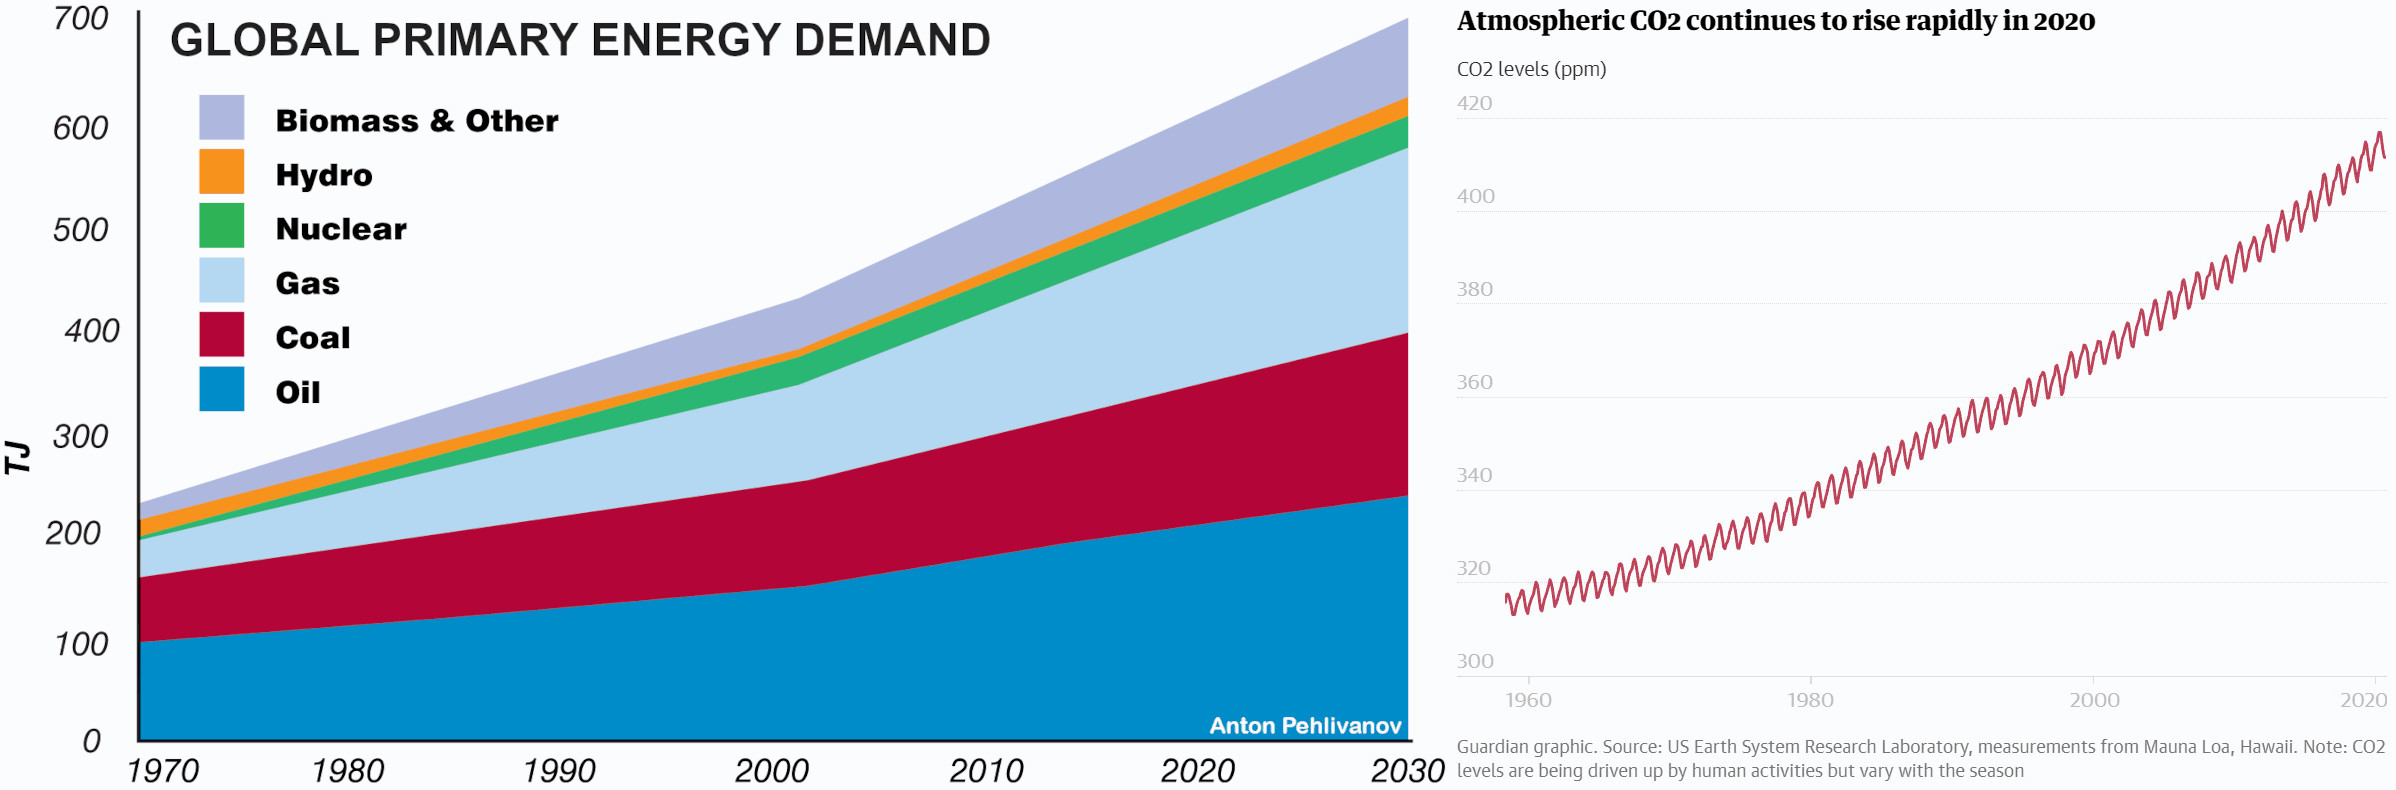 Primary Energy Demand vs. CO2